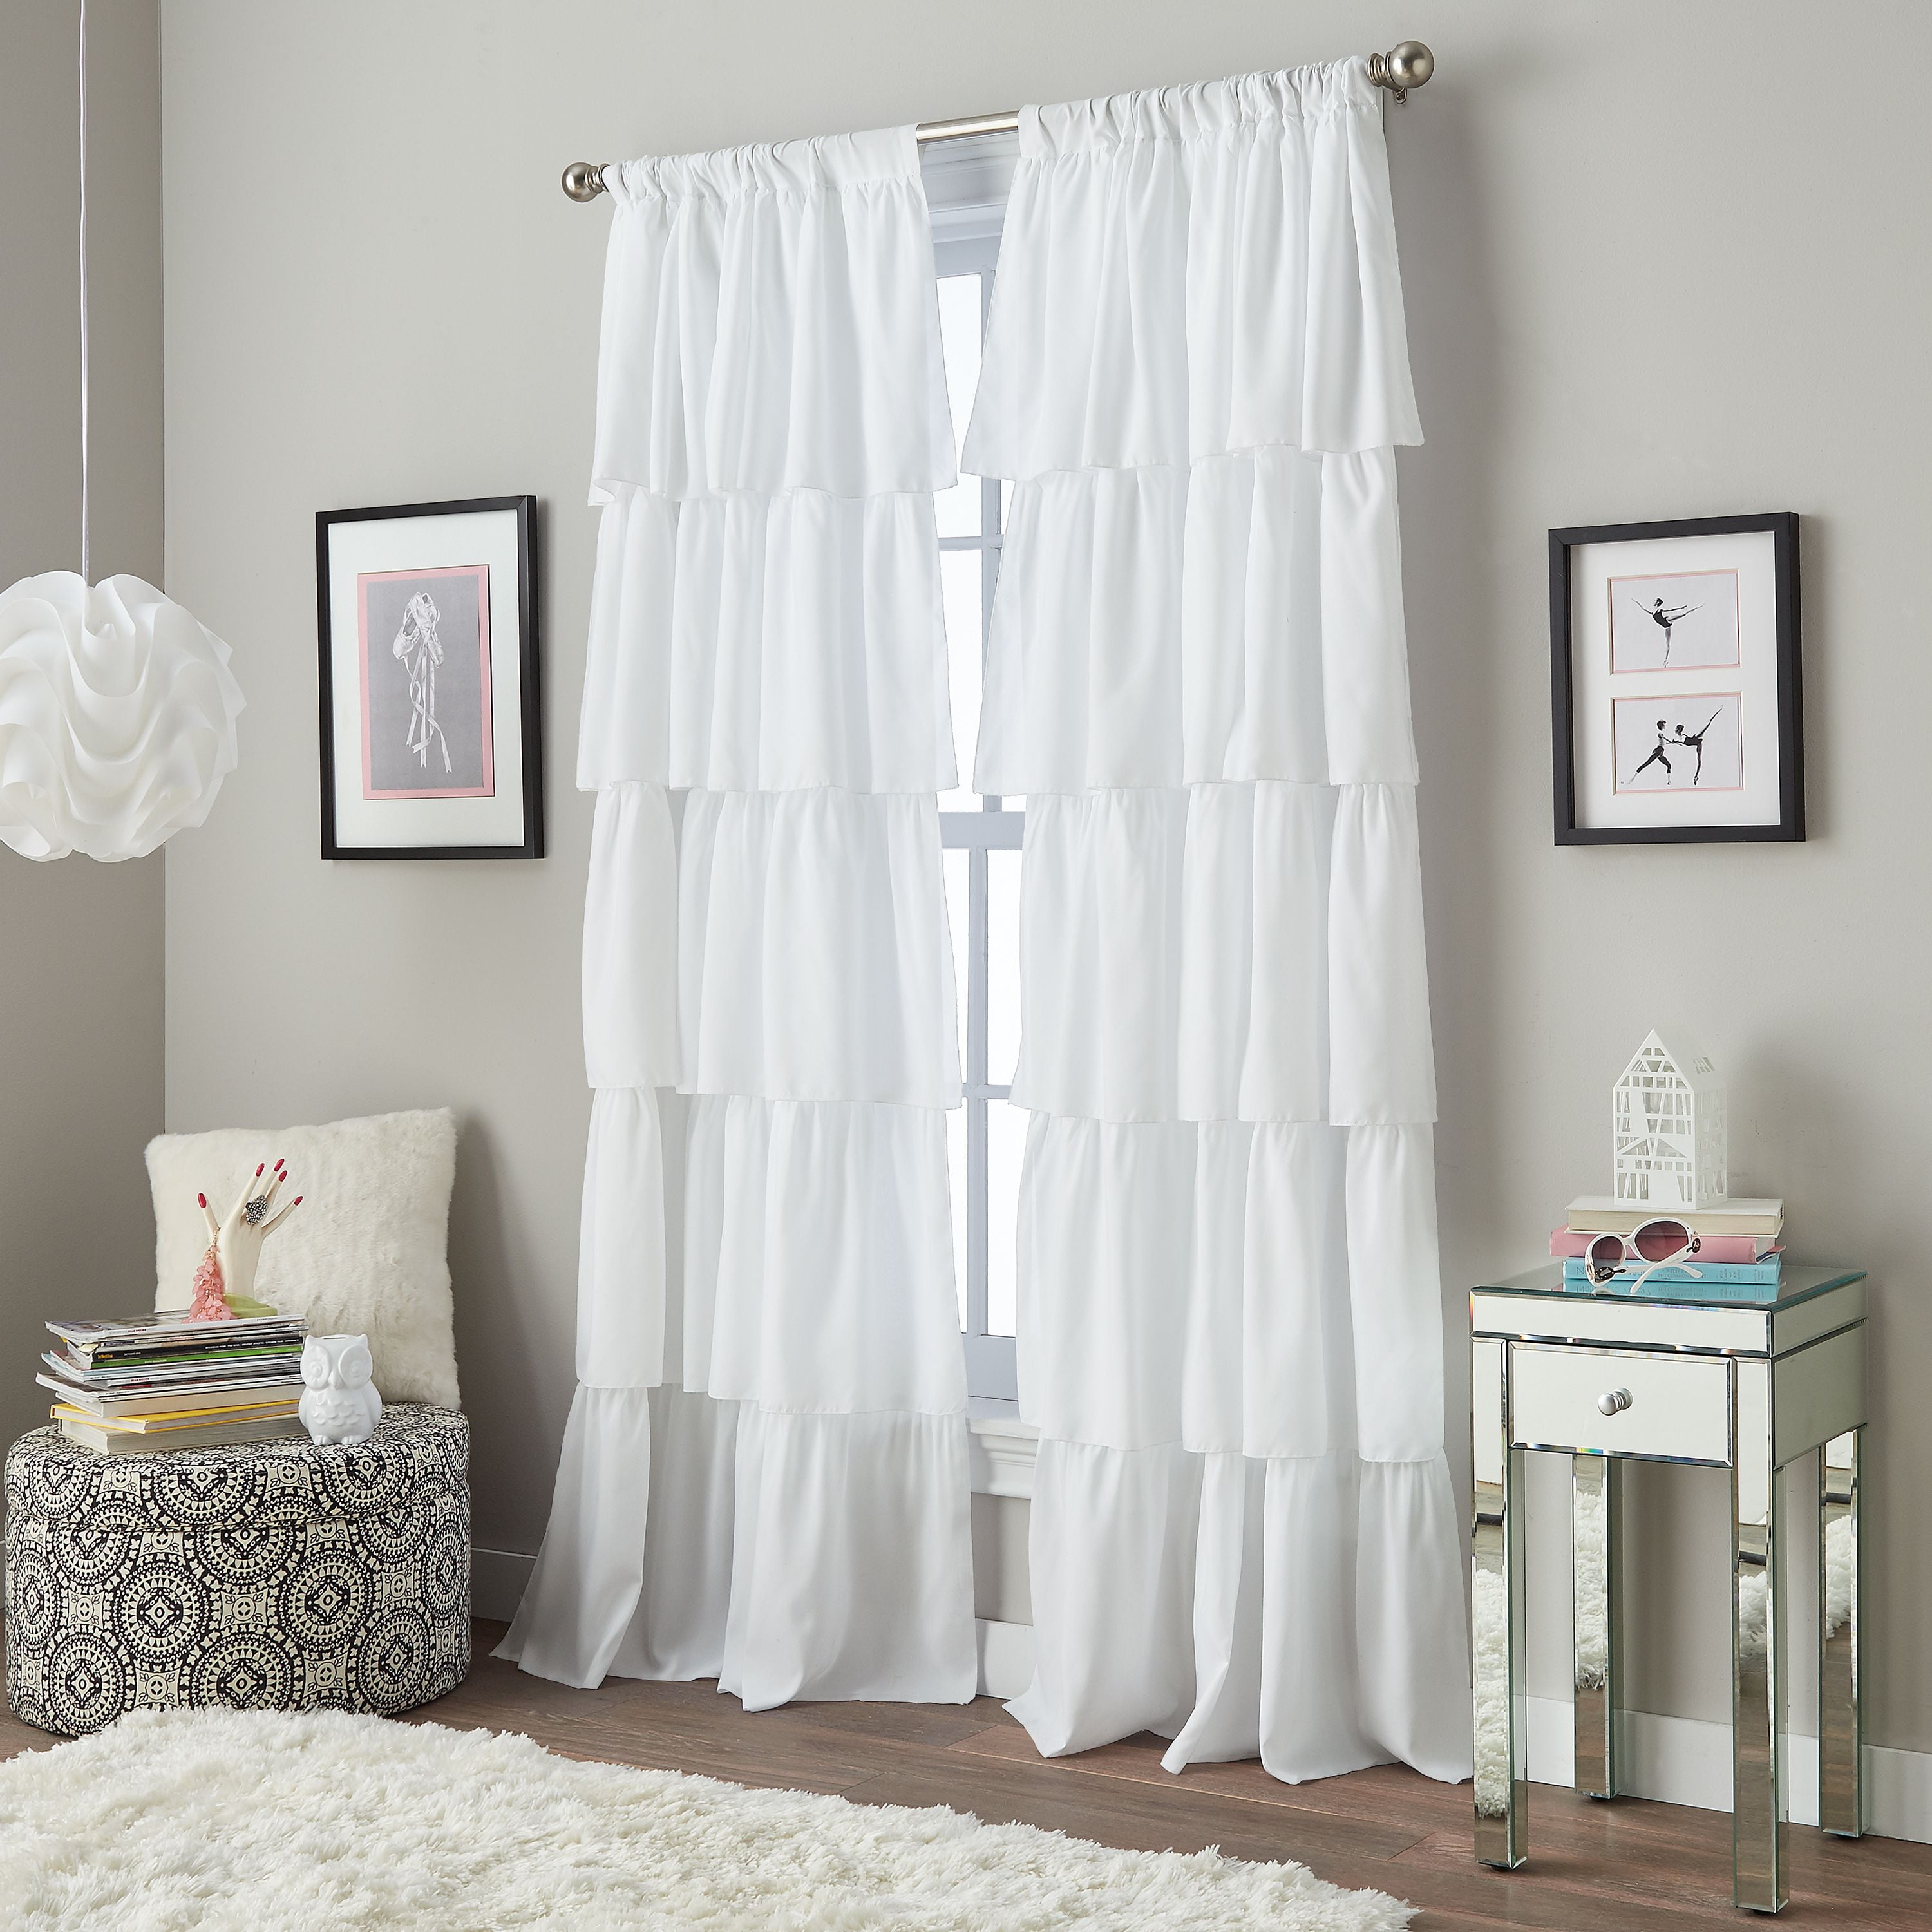 curtains for bedroom door